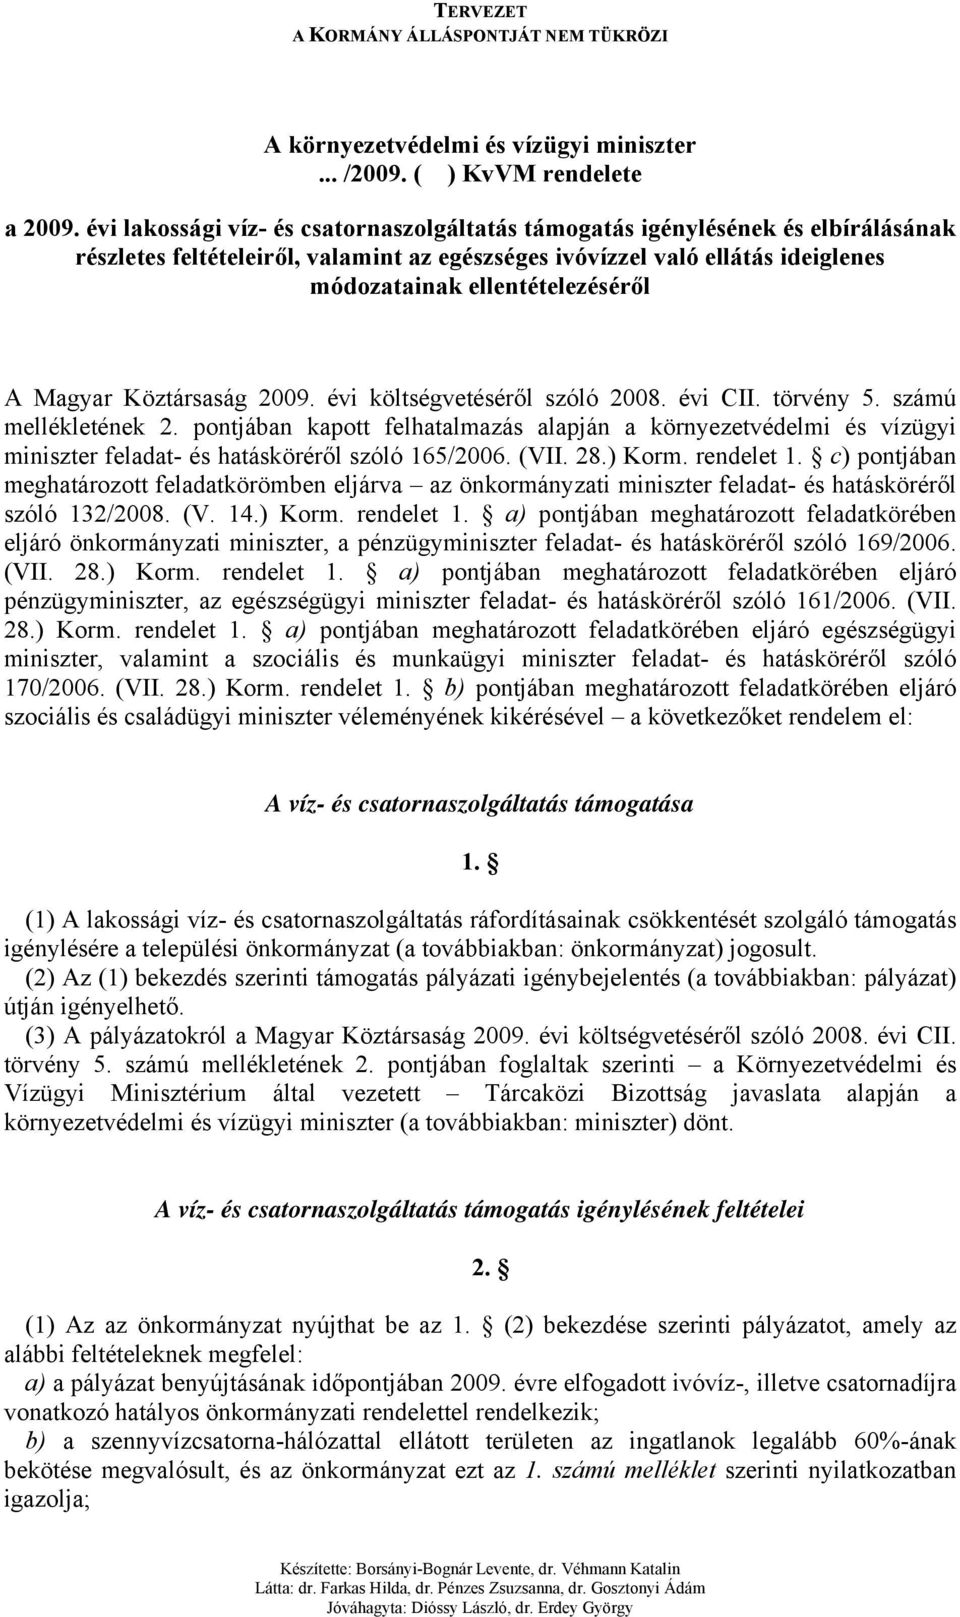 Magyar Köztársaság 2009. évi költségvetéséről szóló 2008. évi CII. törvény 5. számú mellékletének 2.